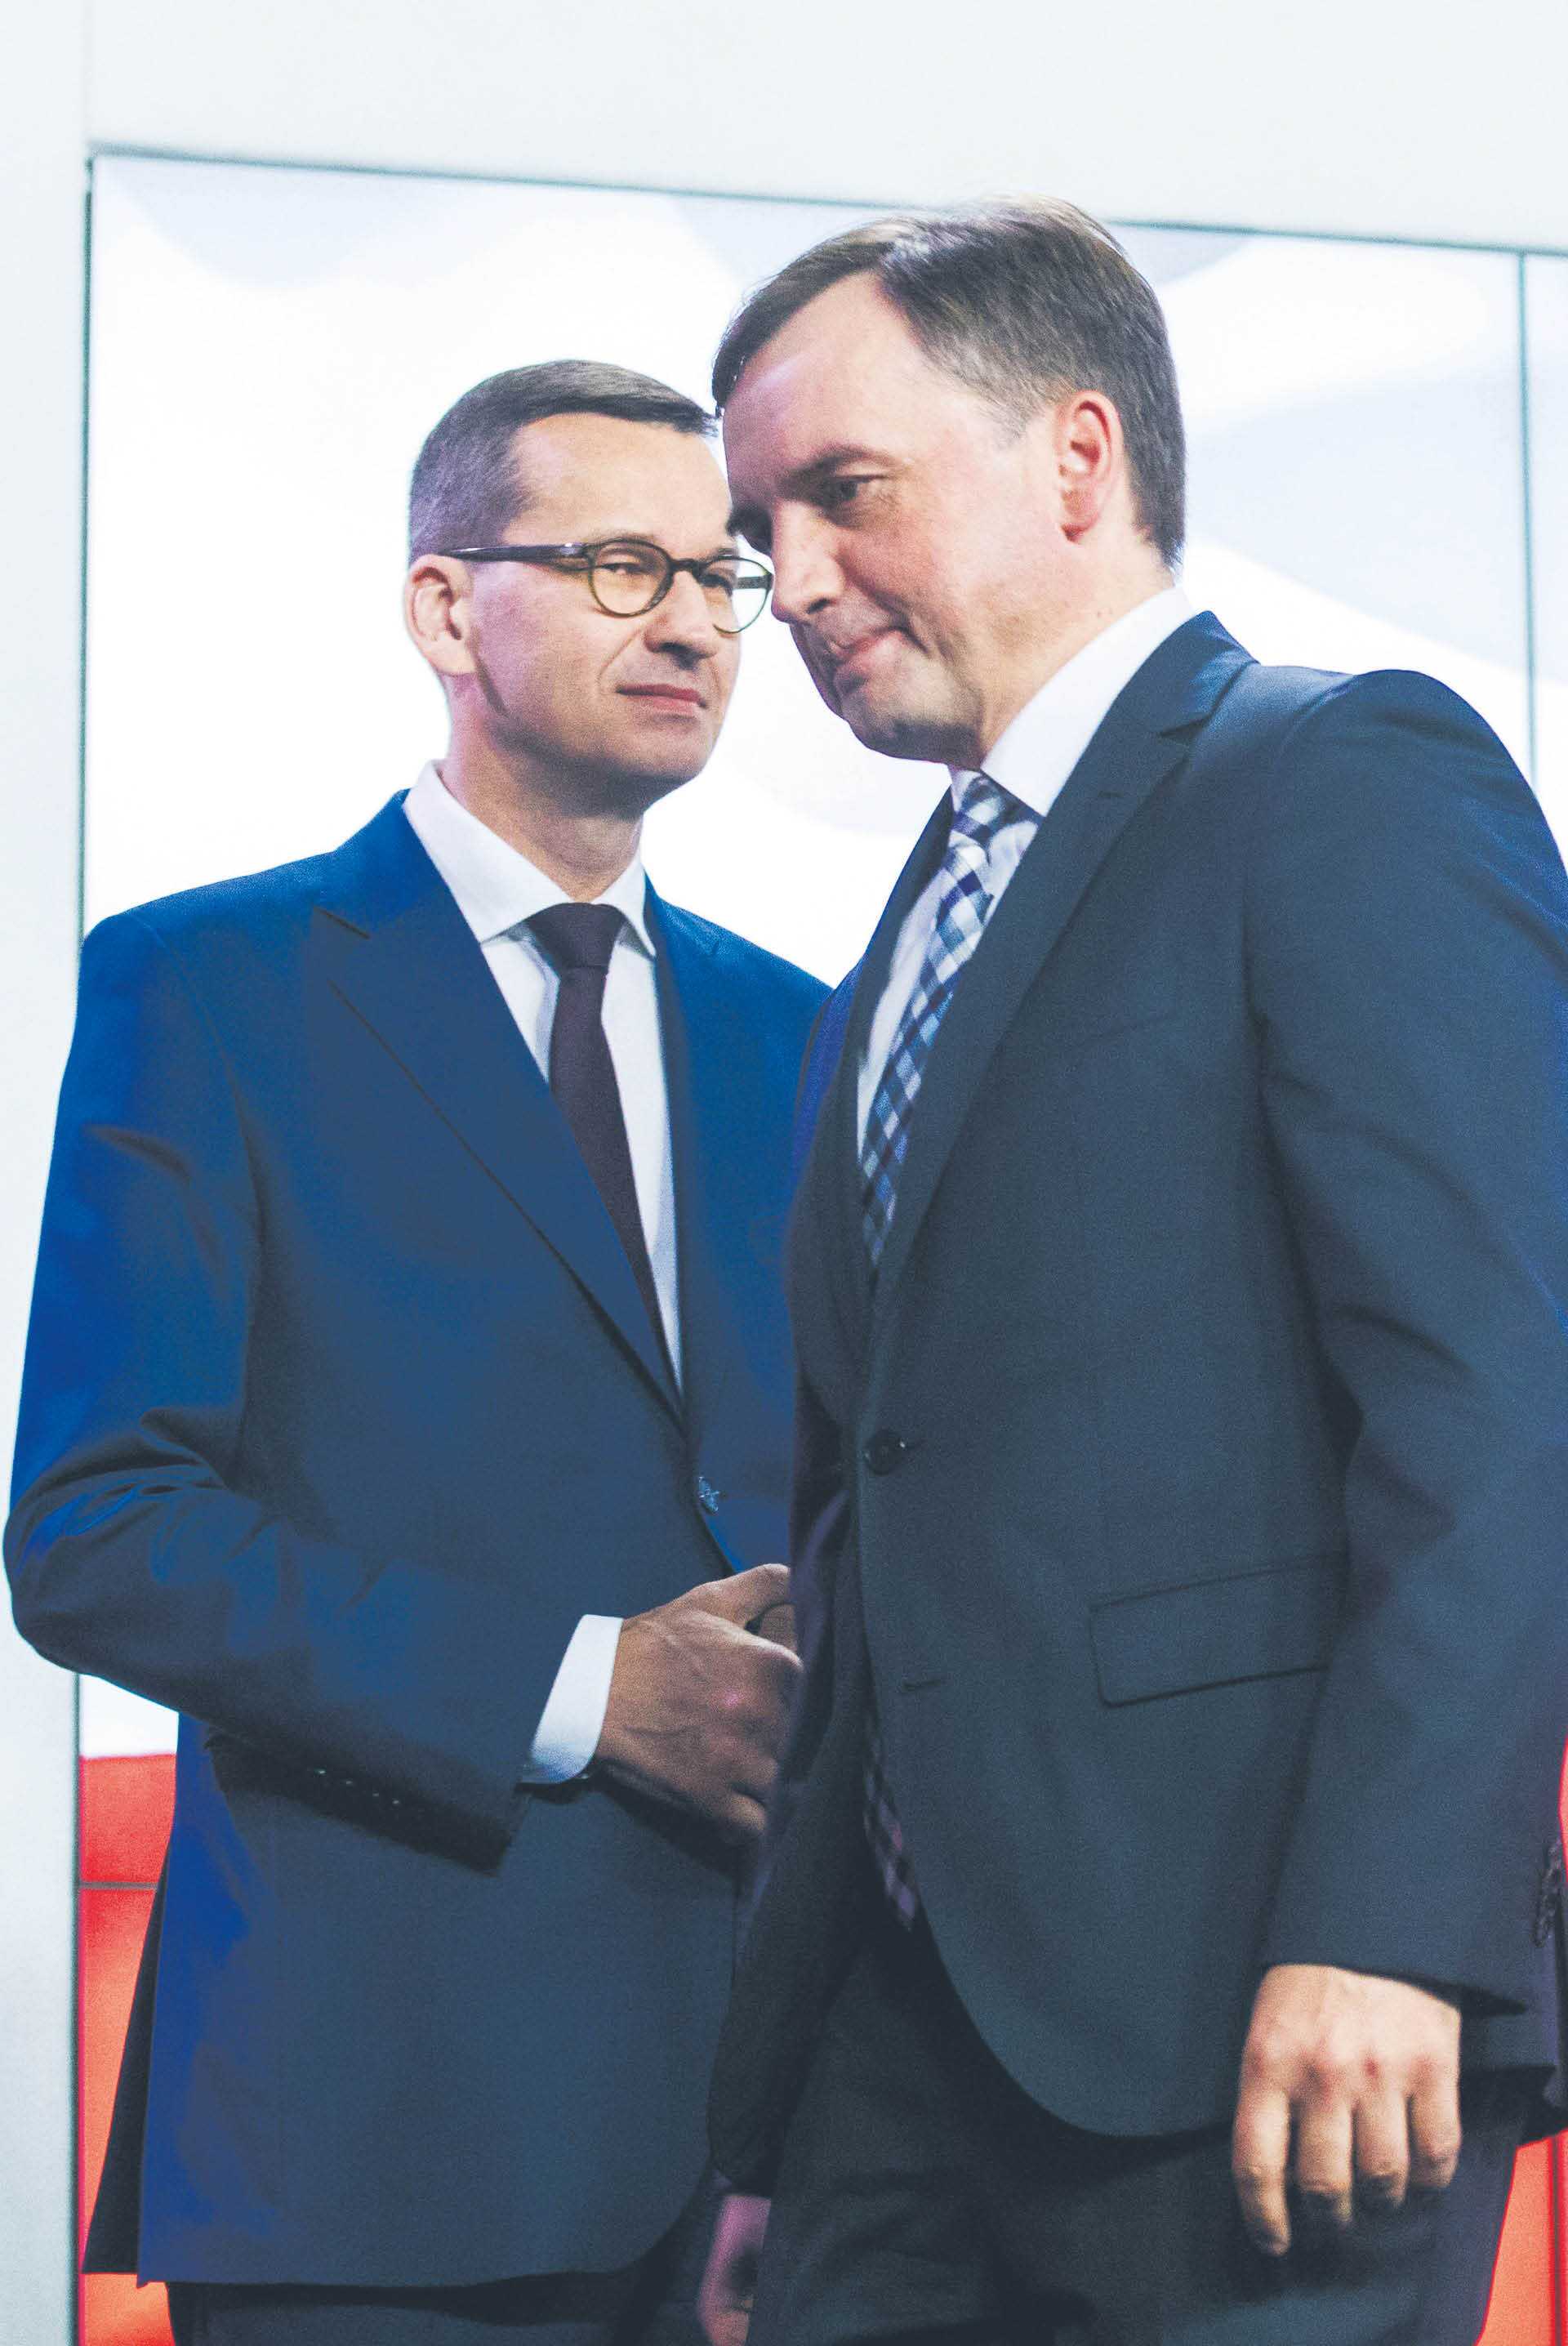 Polityka unijna to jedna z osi sporu między PiS a koalicyjną Suwerenną Polską; na zdjęciu premier Mateusz Morawiecki i minister sprawiedliwości Zbigniew Ziobro